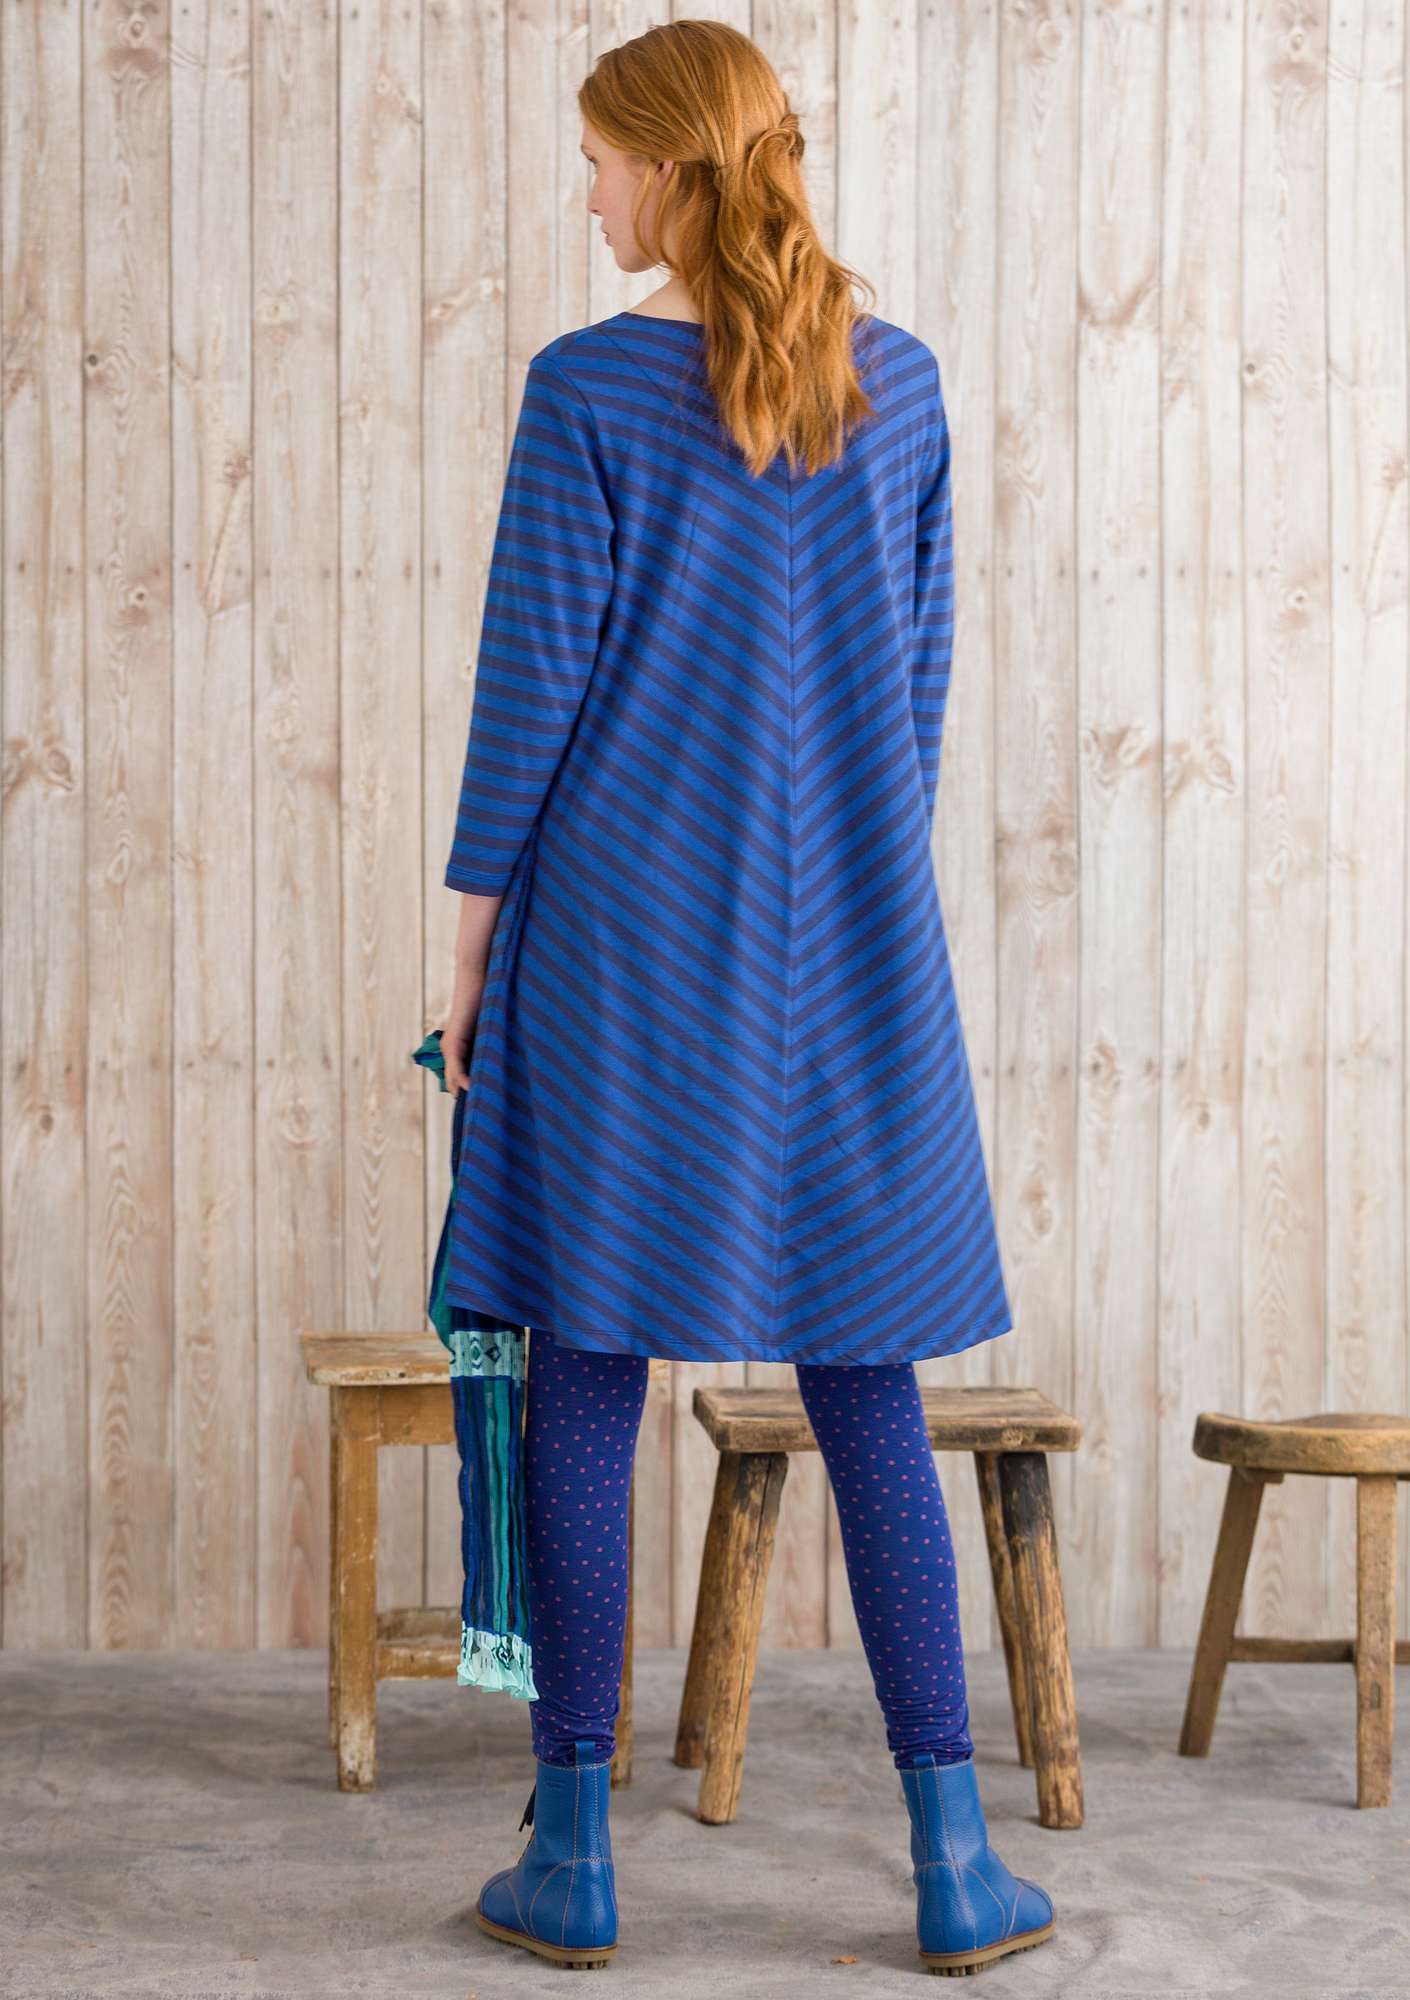 Kleid aus Modal/Baumwolle/Elasthan mitternachtsblau-kobaltblau thumbnail